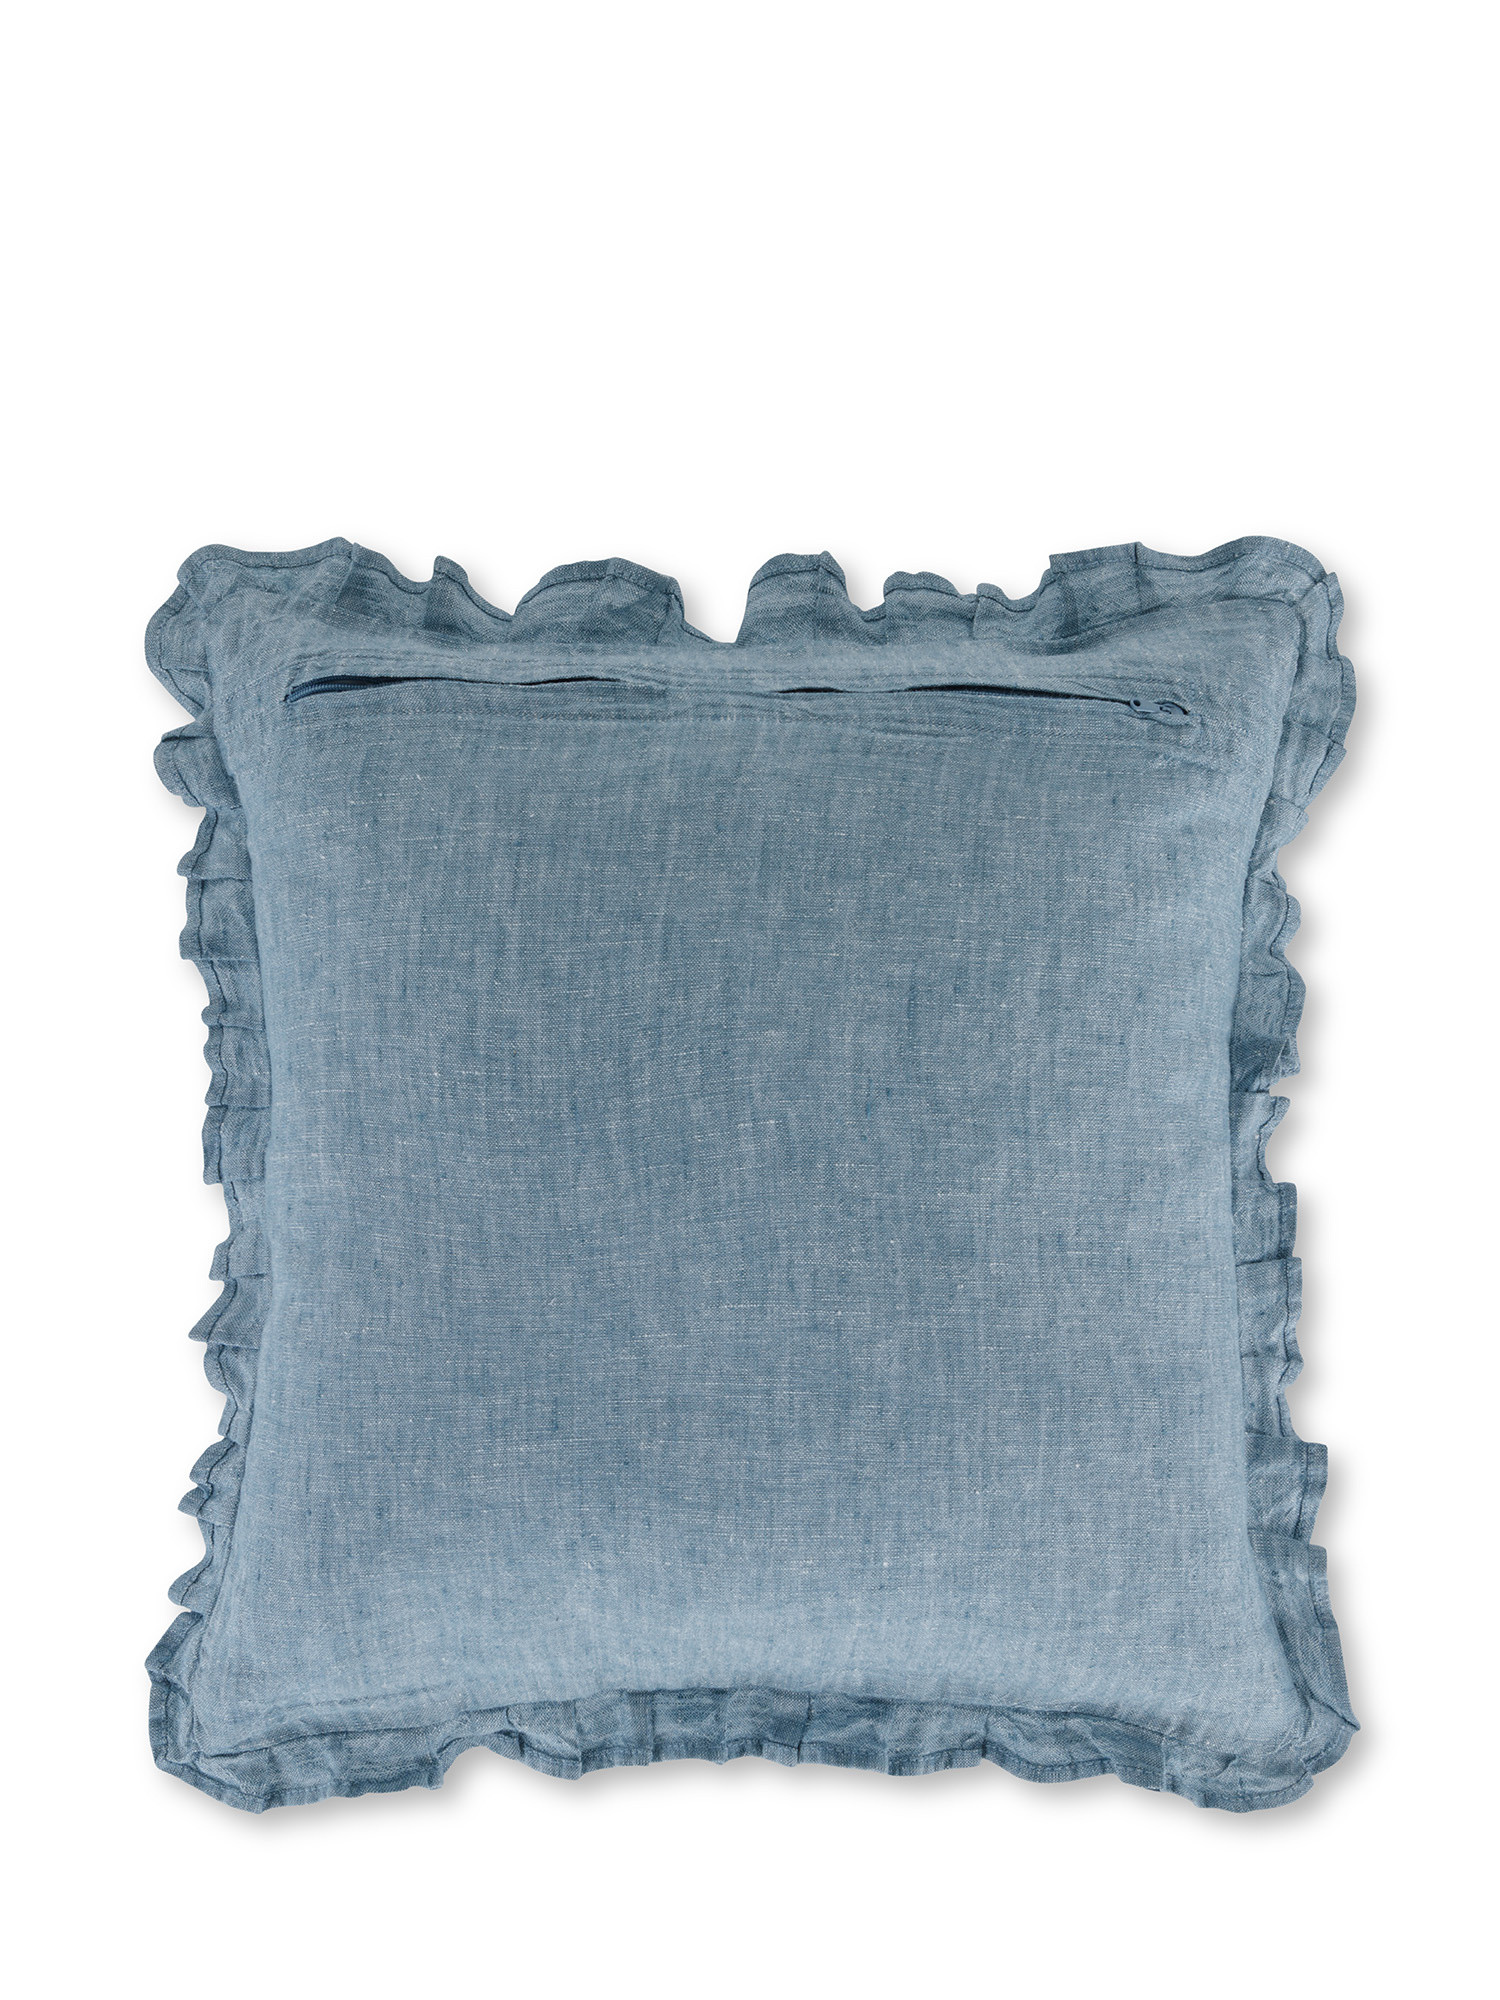 Cuscino rigato in puro lino 40x40 cm, Azzurro, large image number 1